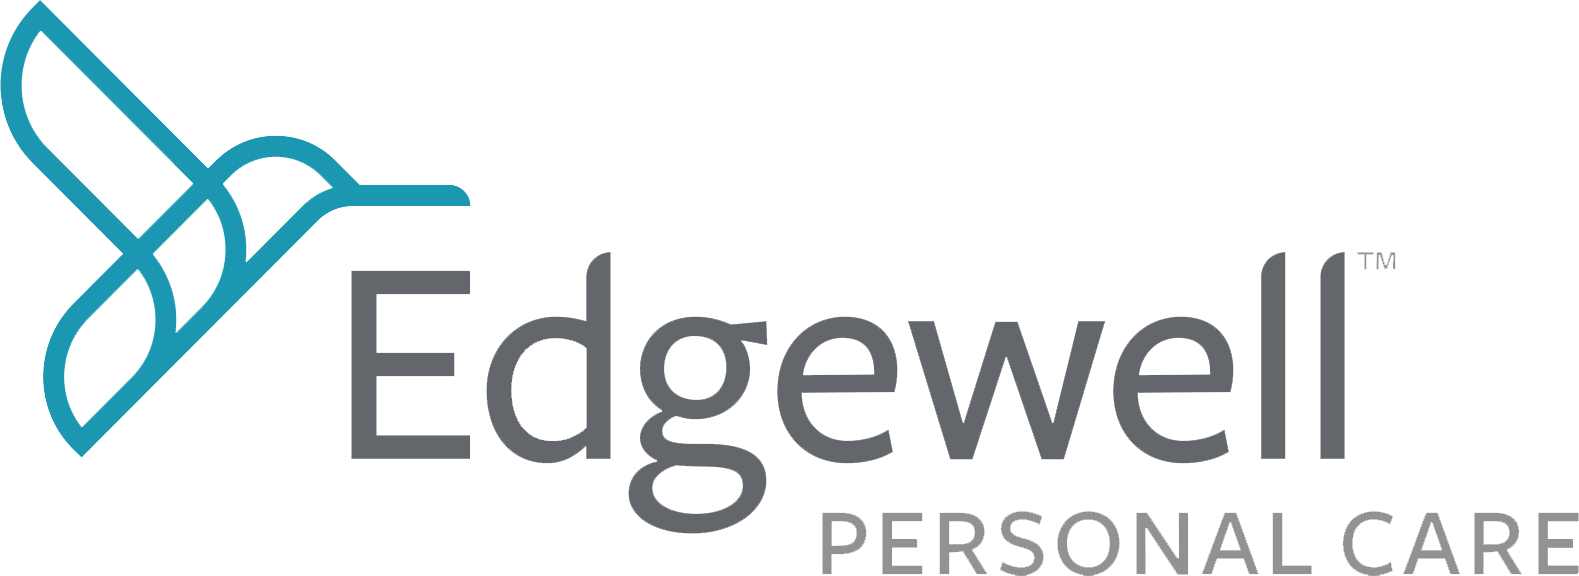 Edgewell-logo-2015